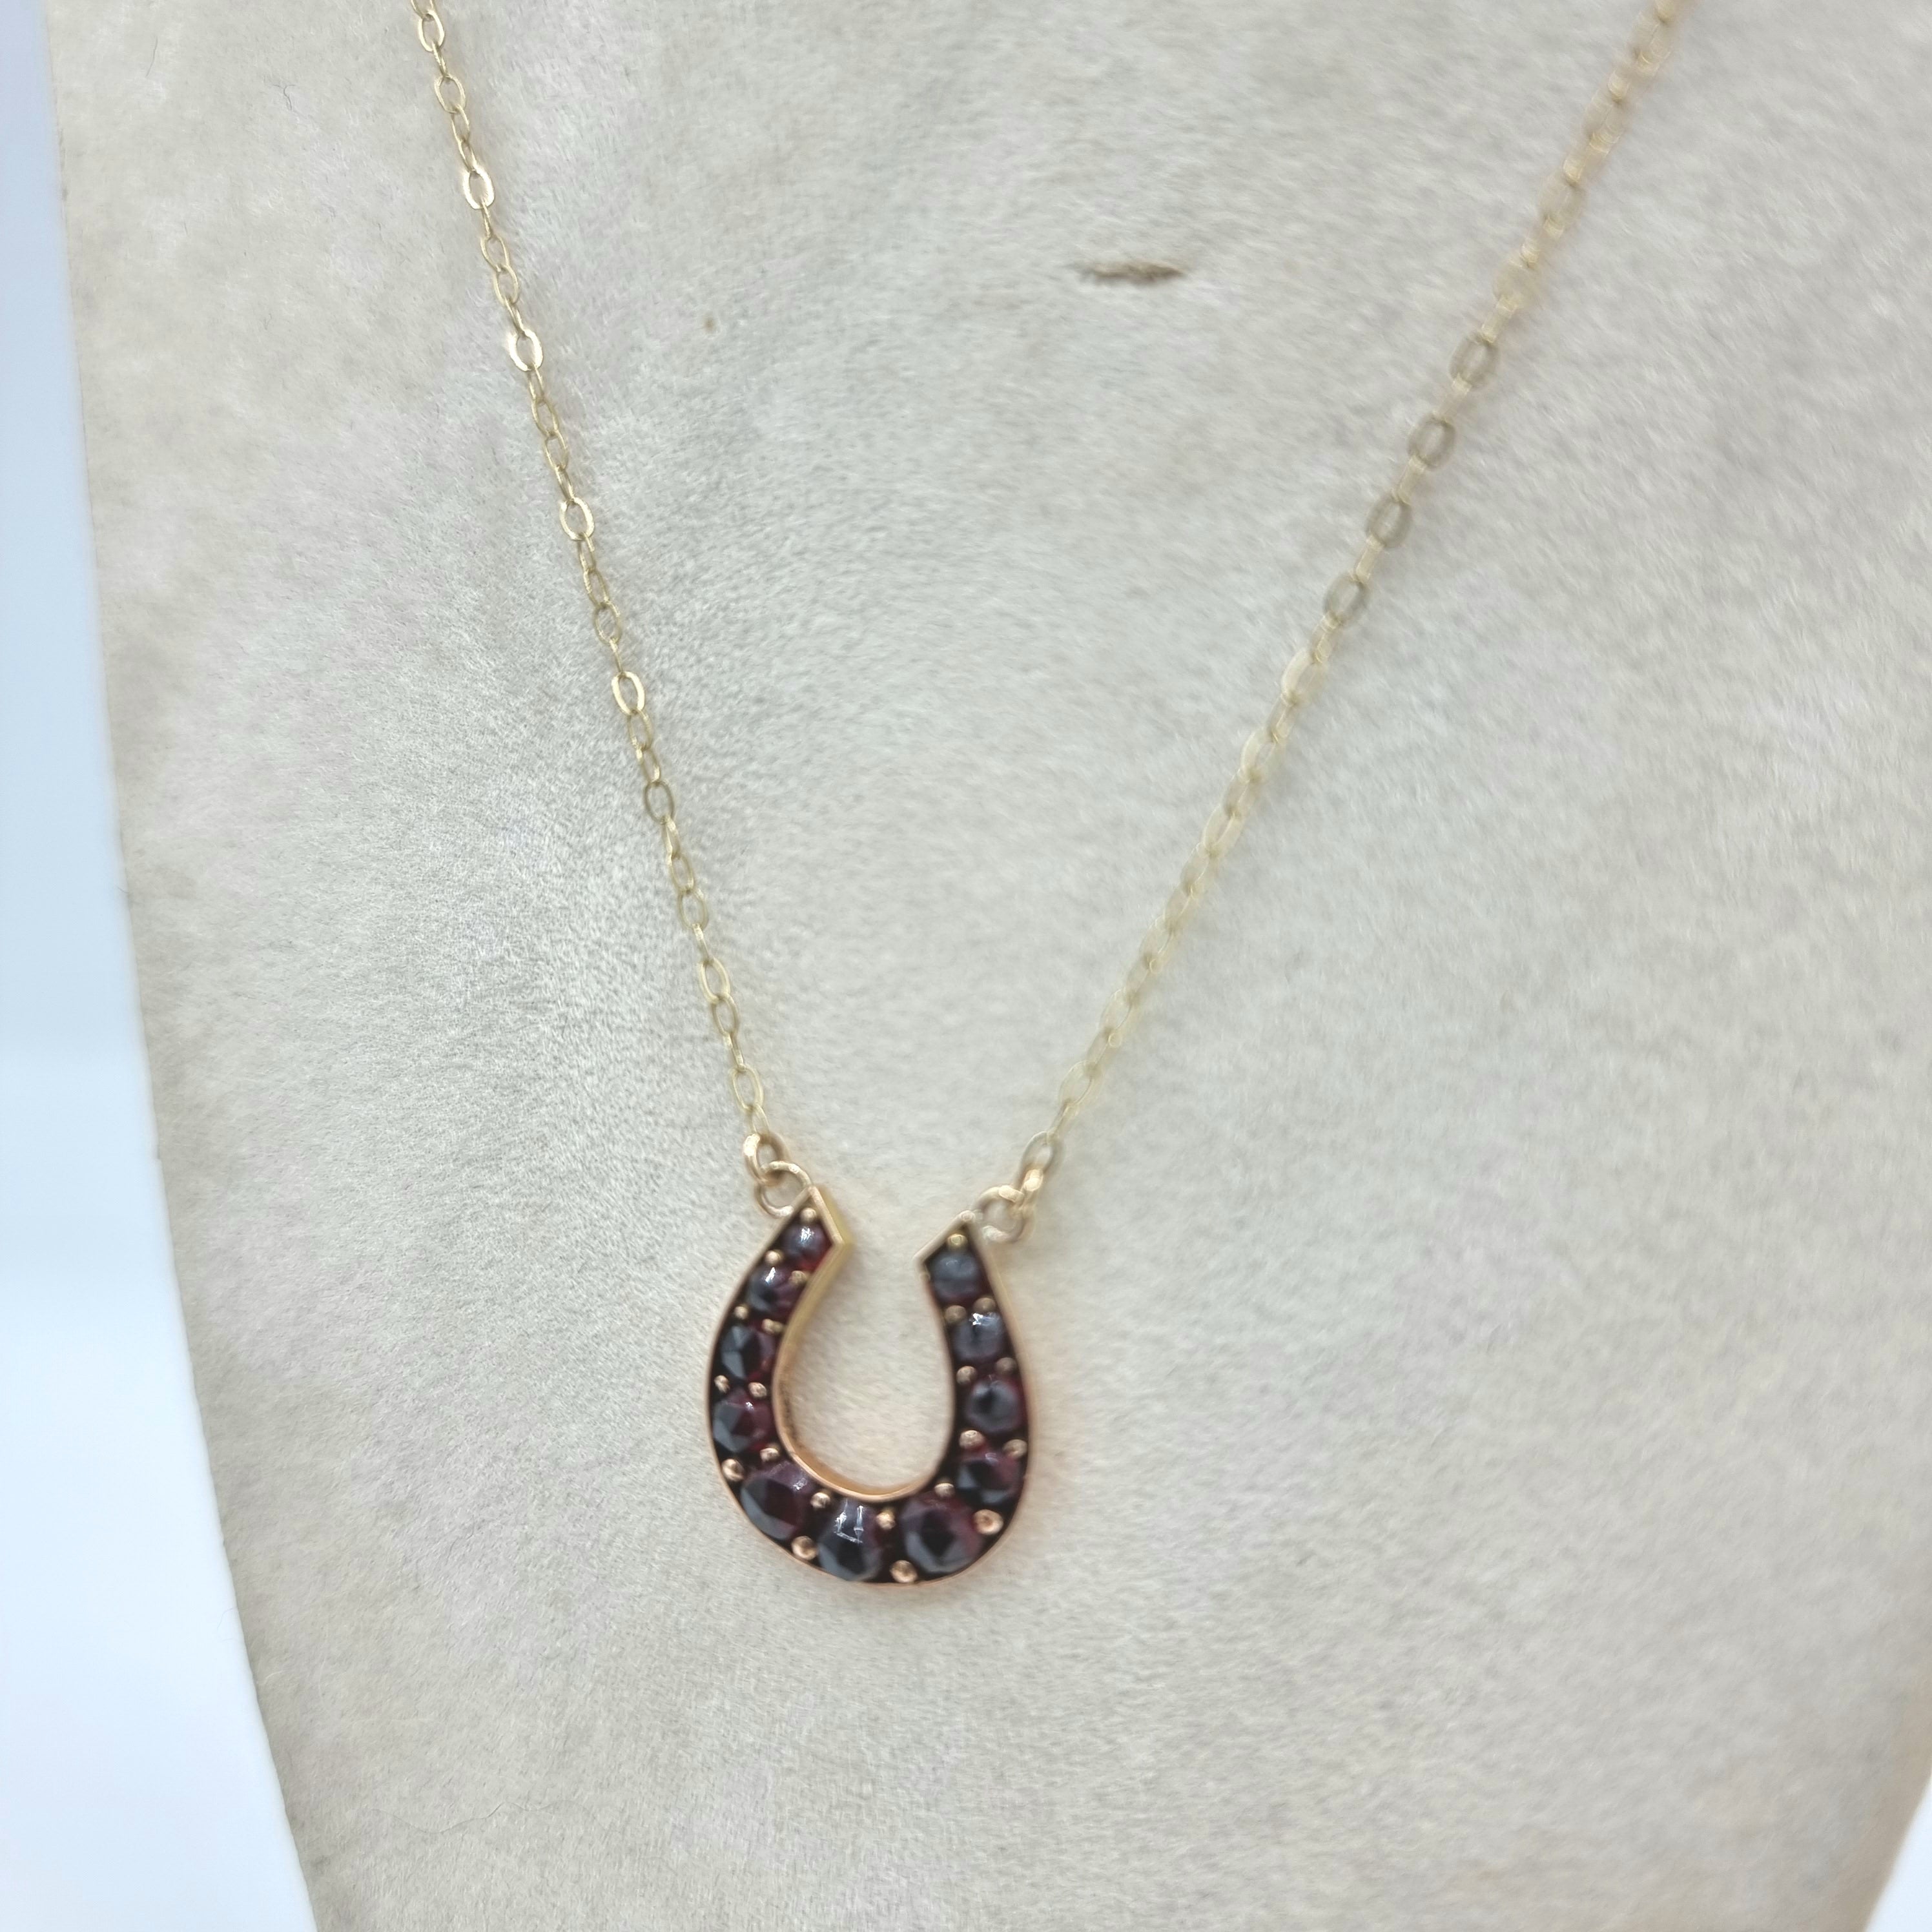 Antique gold necklace - Victorian horseshoe pendant - Garnet 9ct